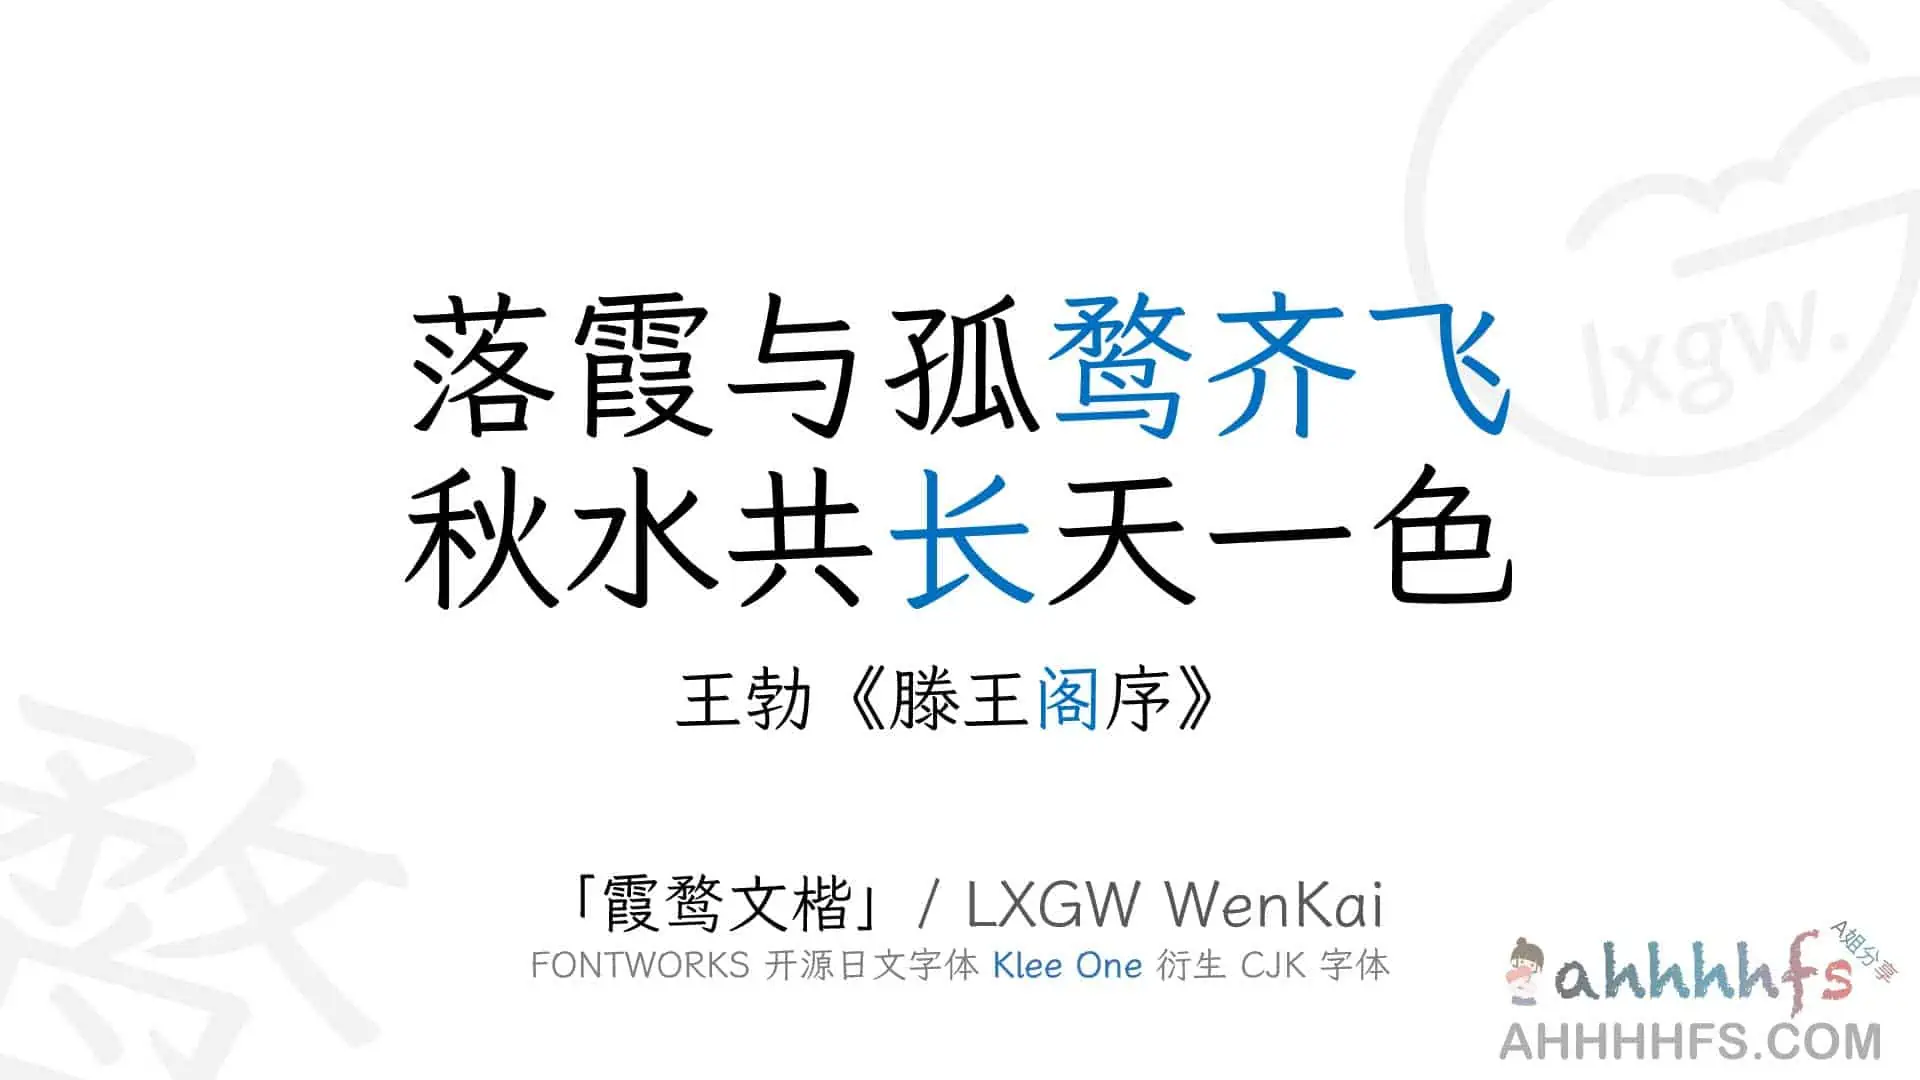 霞鹜文楷LxgwWenKai 免费开源中文字体可商用- A姐分享